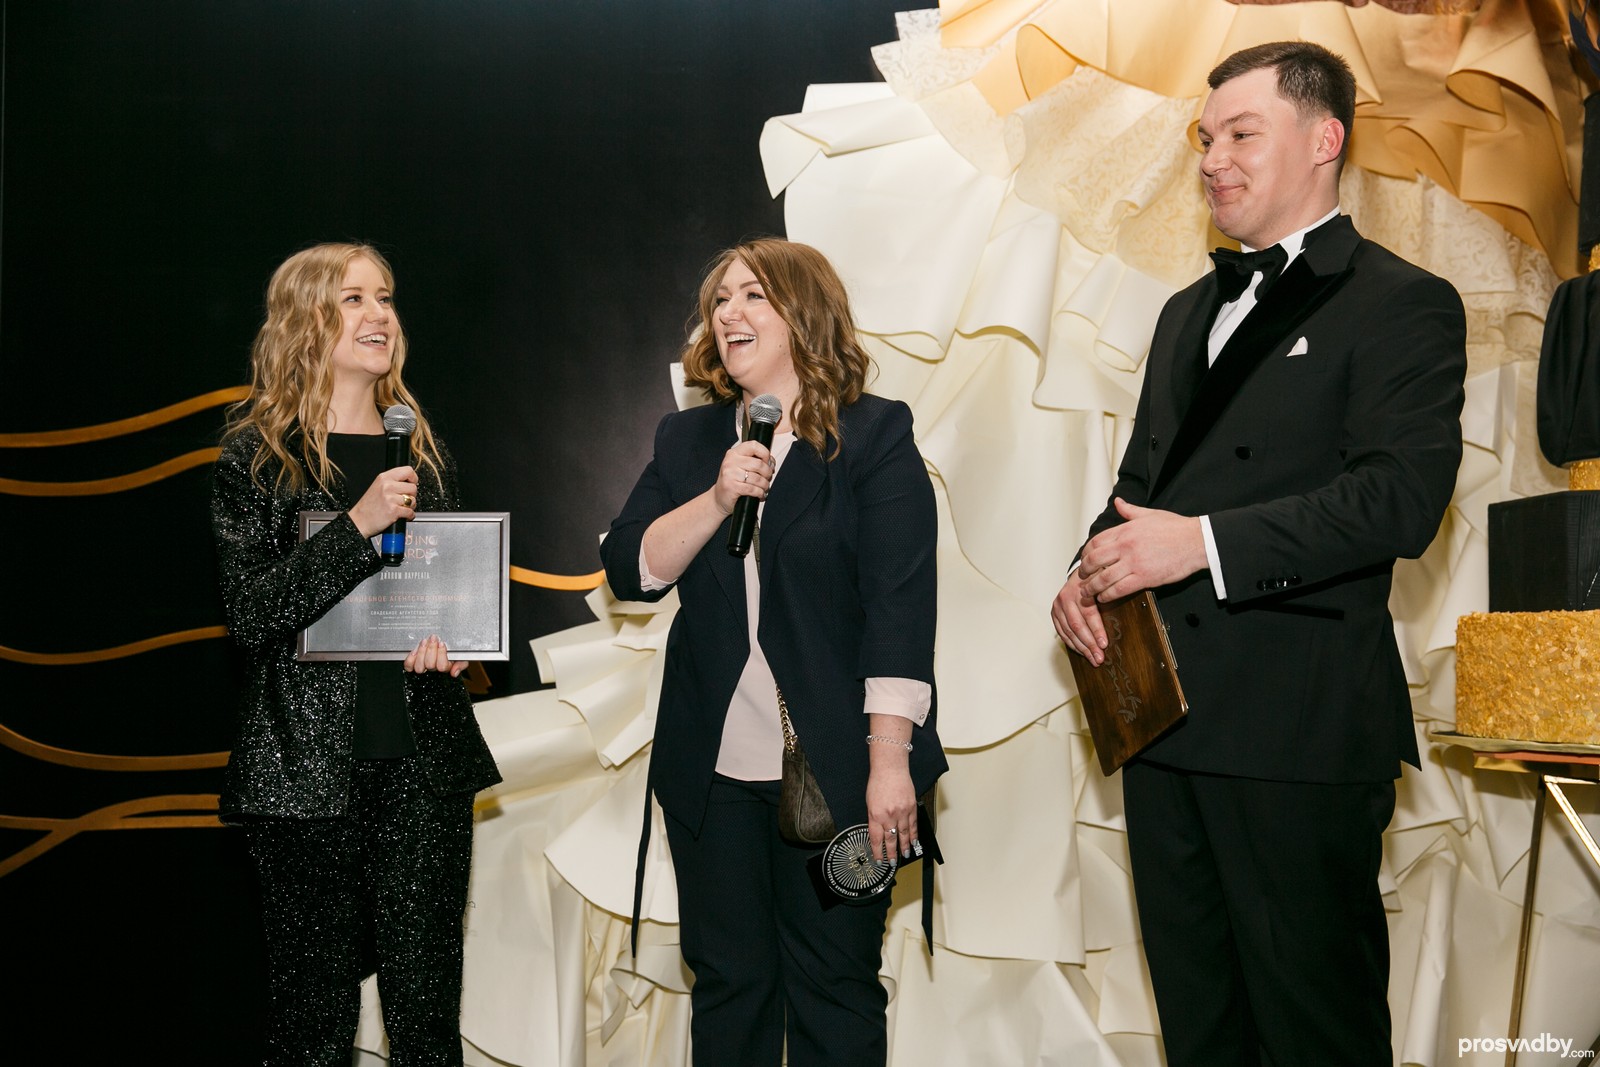 Светлана Демина и Анастасия Добровольская, управляющие агентством Пломбир во второй раз получили статуэтку лауреатов как Свадебное агентство года 2018